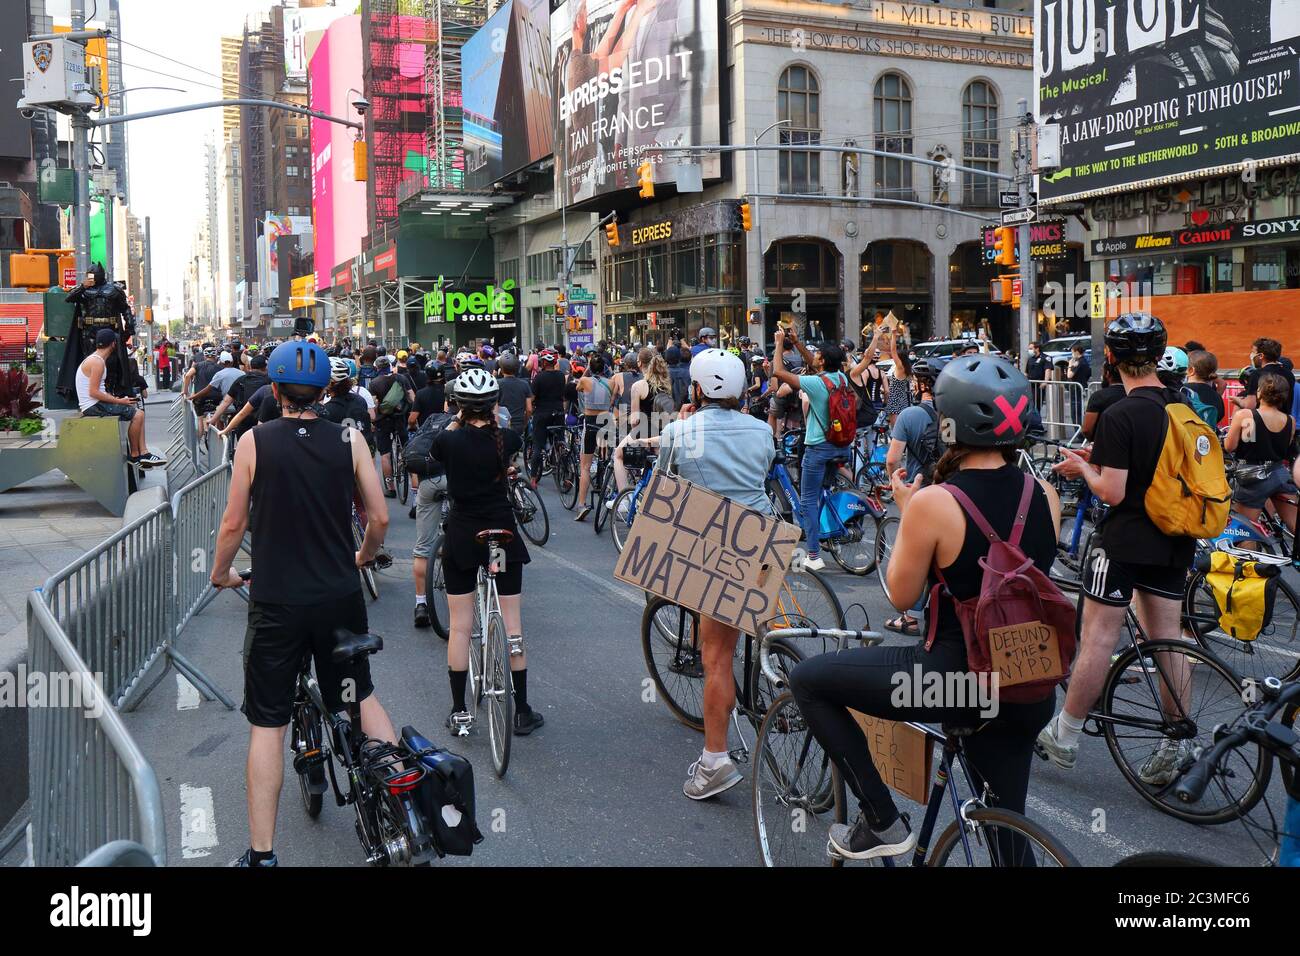 New York, NY, 20. Juni 2020. Demonstranten auf Fahrrädern auf dem Times Square, der von Polizeibarrikaden umgeben ist. Der Fahrradprotest war eine Solidaritätsfahrt mit Black Lives Matter, die in einer Reihe von amerikanischen Polizeimorden Gerechtigkeit forderte: George Floyd, Breonna Taylor und unzählige andere. Die Fahrradtour wurde von dem Kollektiv Street Riders NYC organisiert. Mehrere tausend Menschen nahmen an der bewegenden Demonstration Teil, die vom Times Square, Harlem und Battery Park aus ging. Juni 20, 2020 Stockfoto